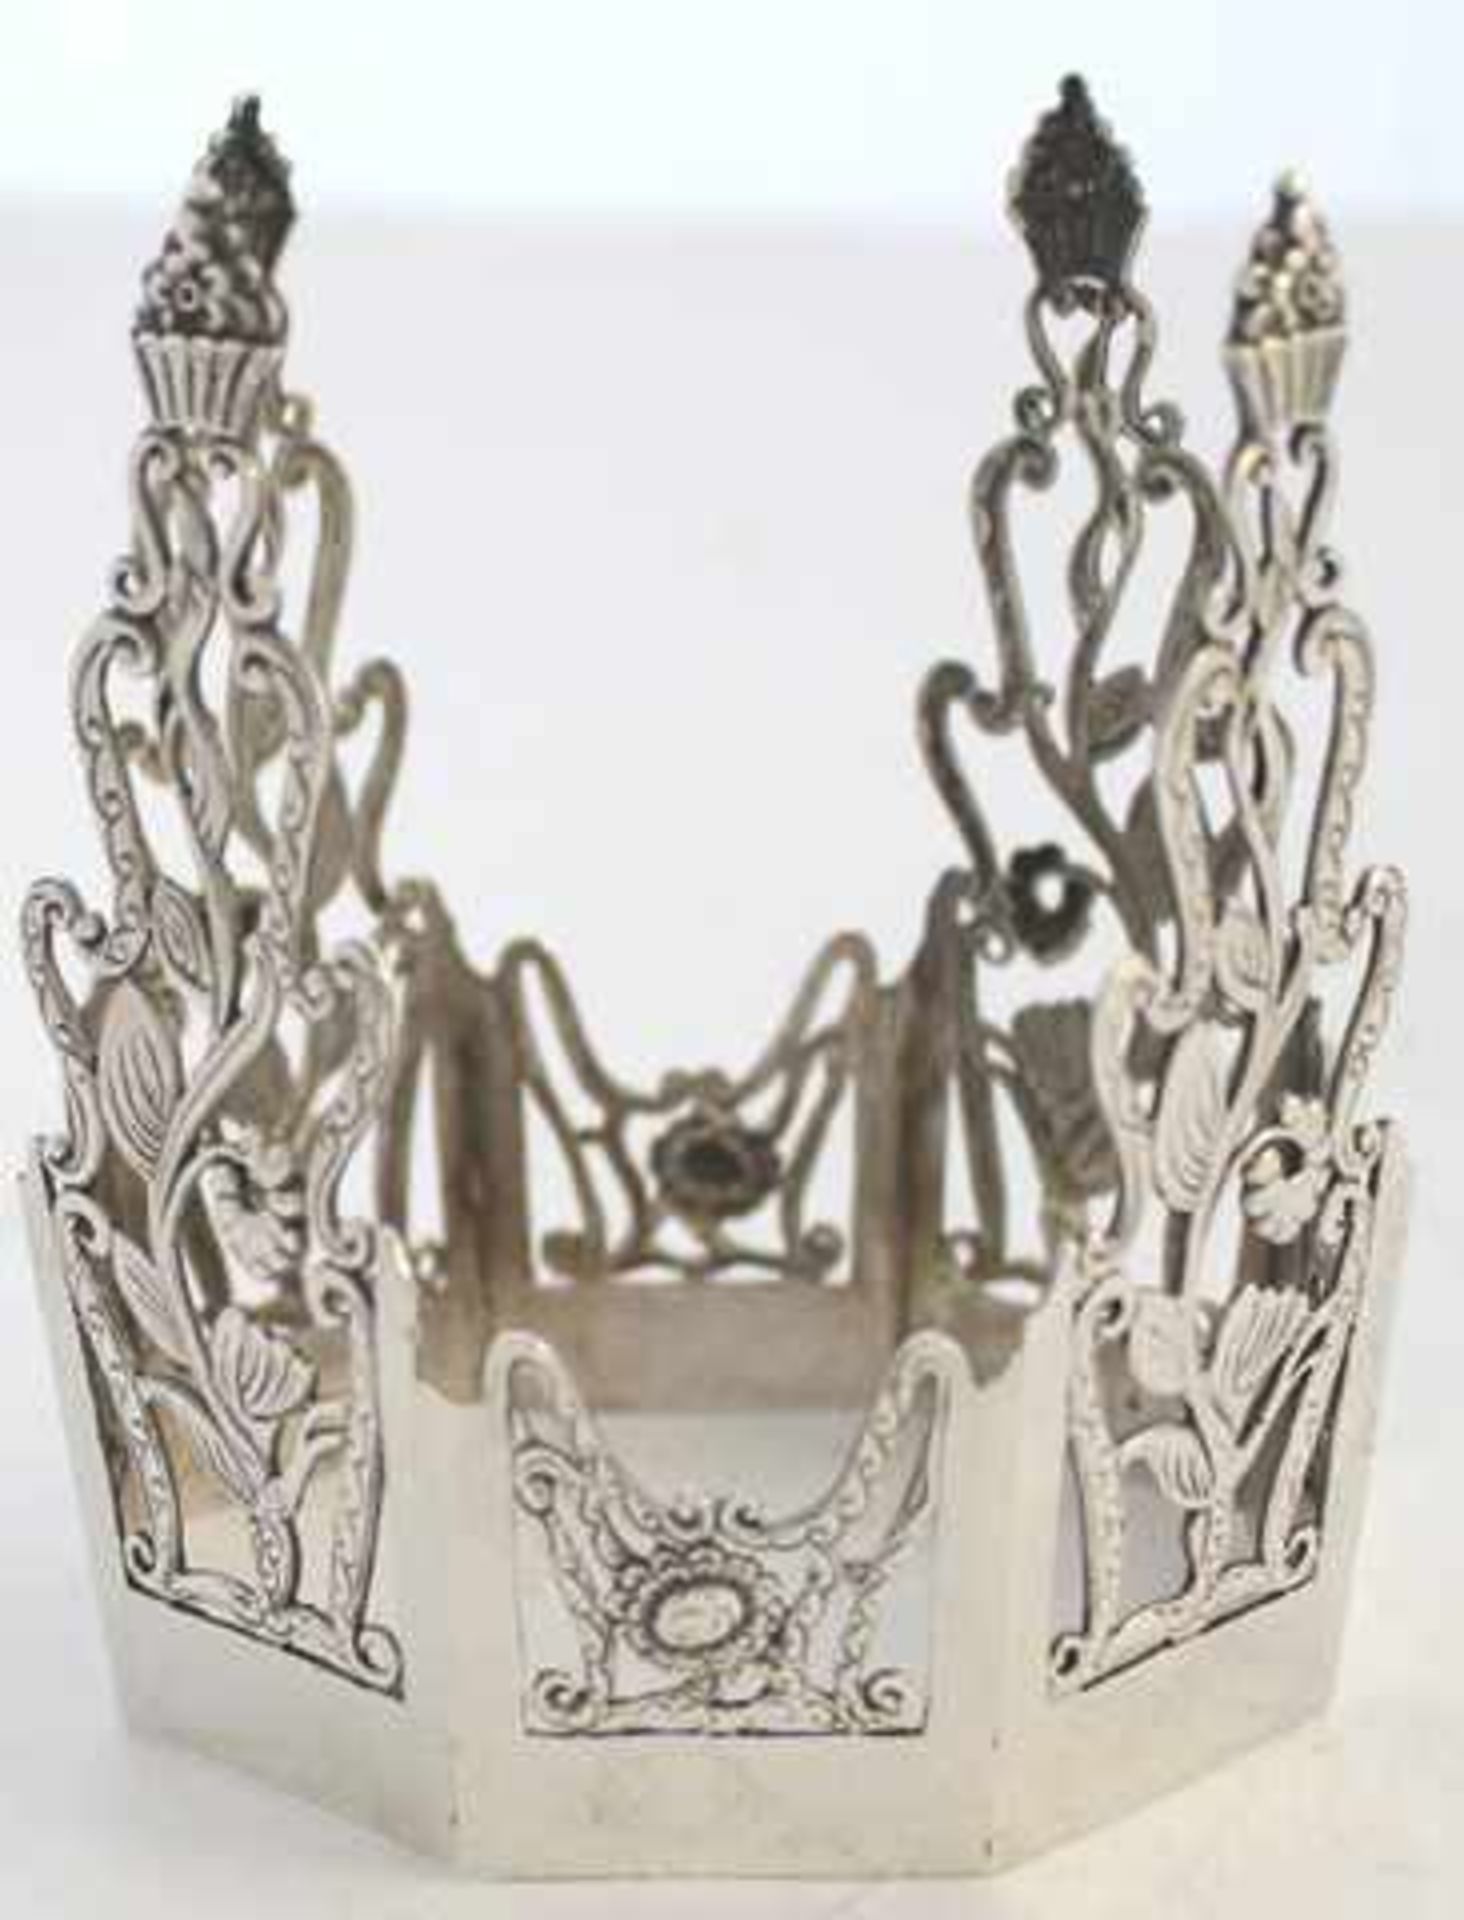 Nach unten offener Flaschenhalter mit floralem Dekor in 800er Silber, hergestellt in den